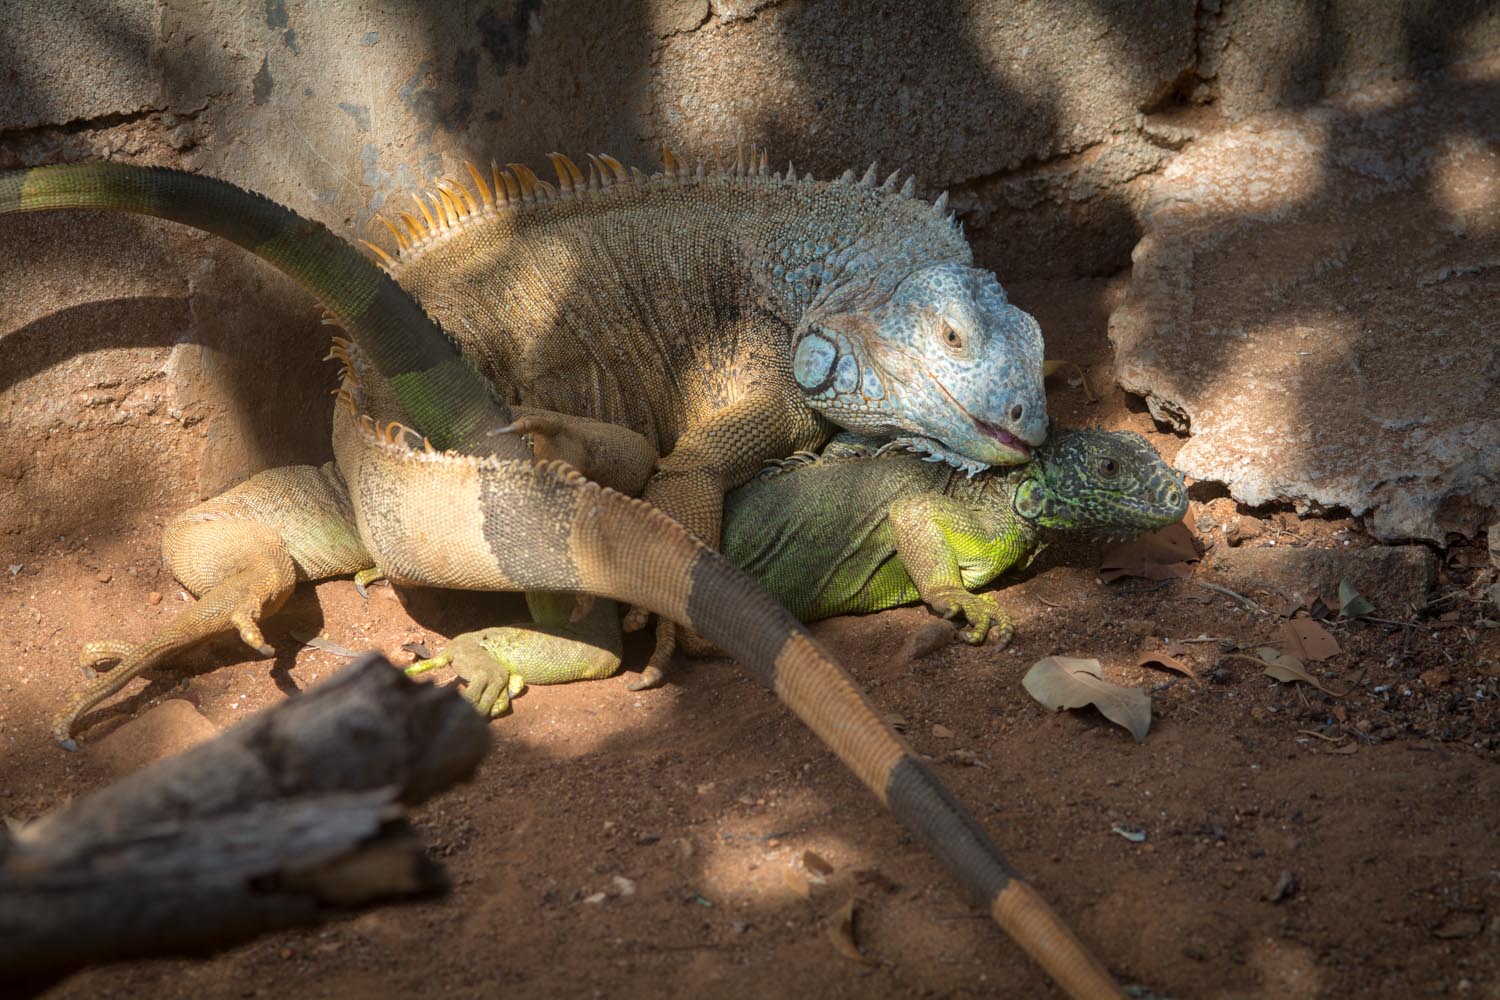 Las iguanas se aparean en la temporada de secas y solo ponen huevos una vez al año. Foto: Ernesto J. Torres, Casa 12